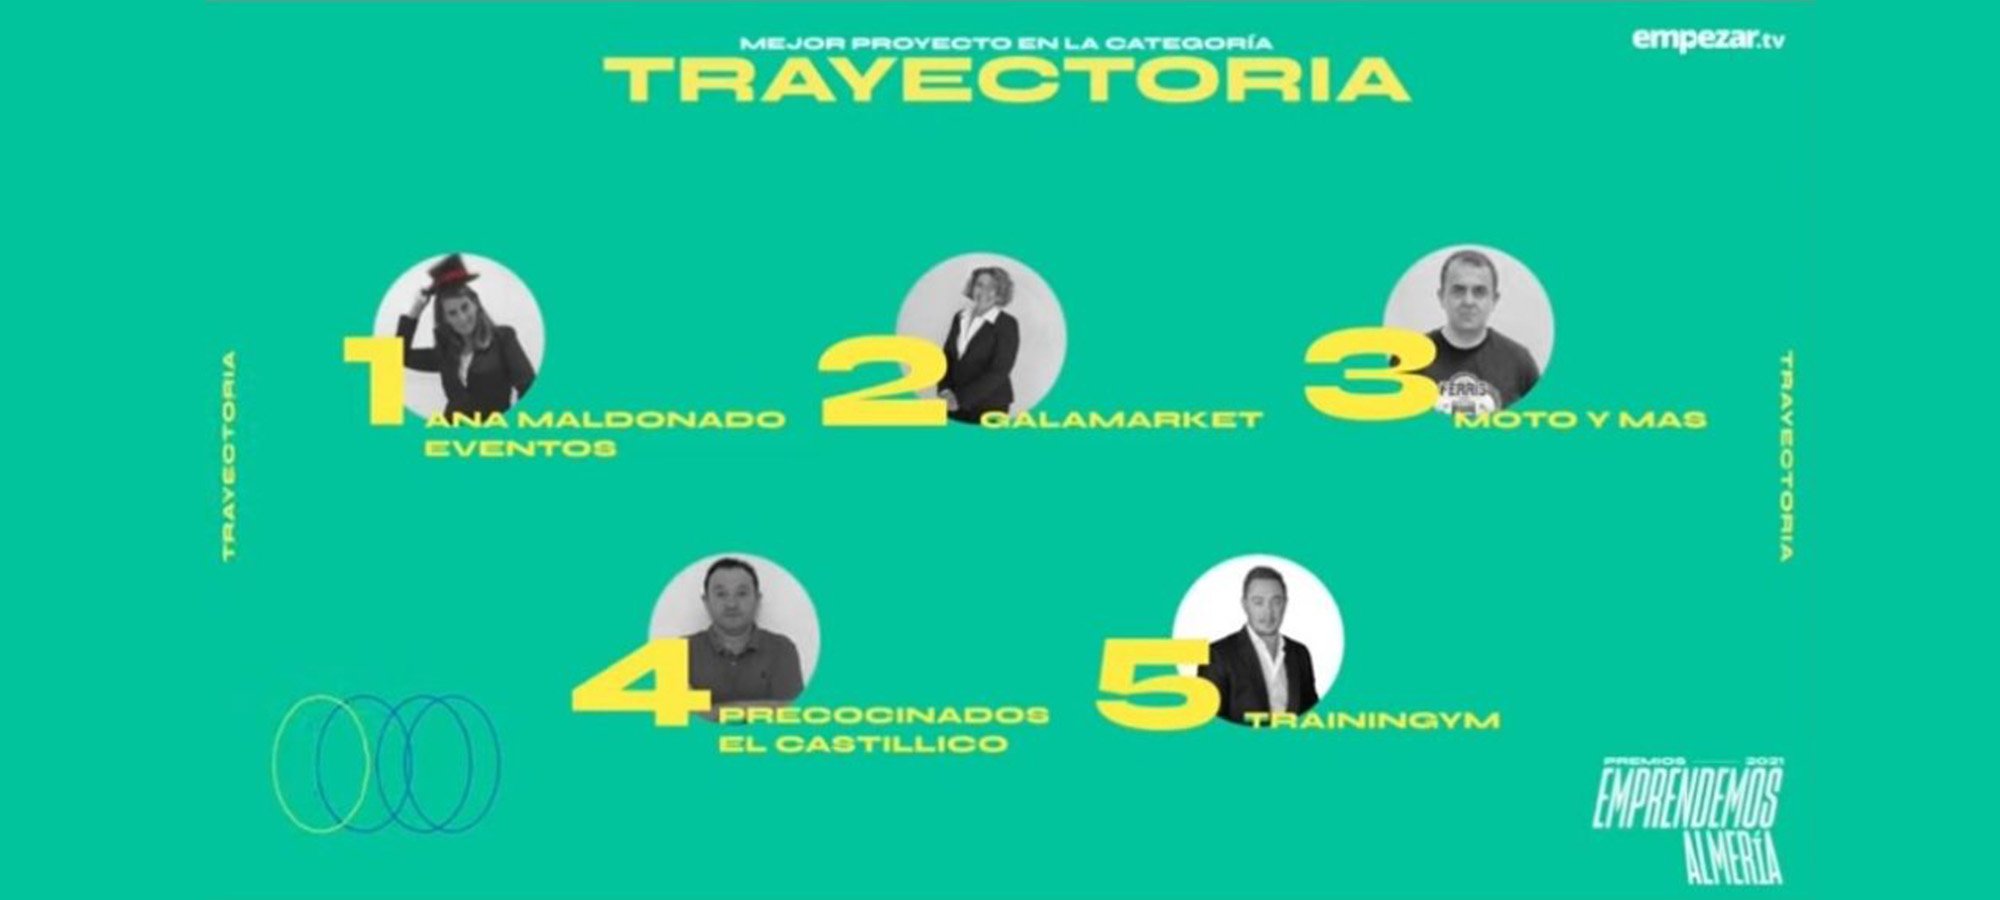 Finalistas-Trayectoria-Premios-Emprendemos-Almeria-2021-1024x874